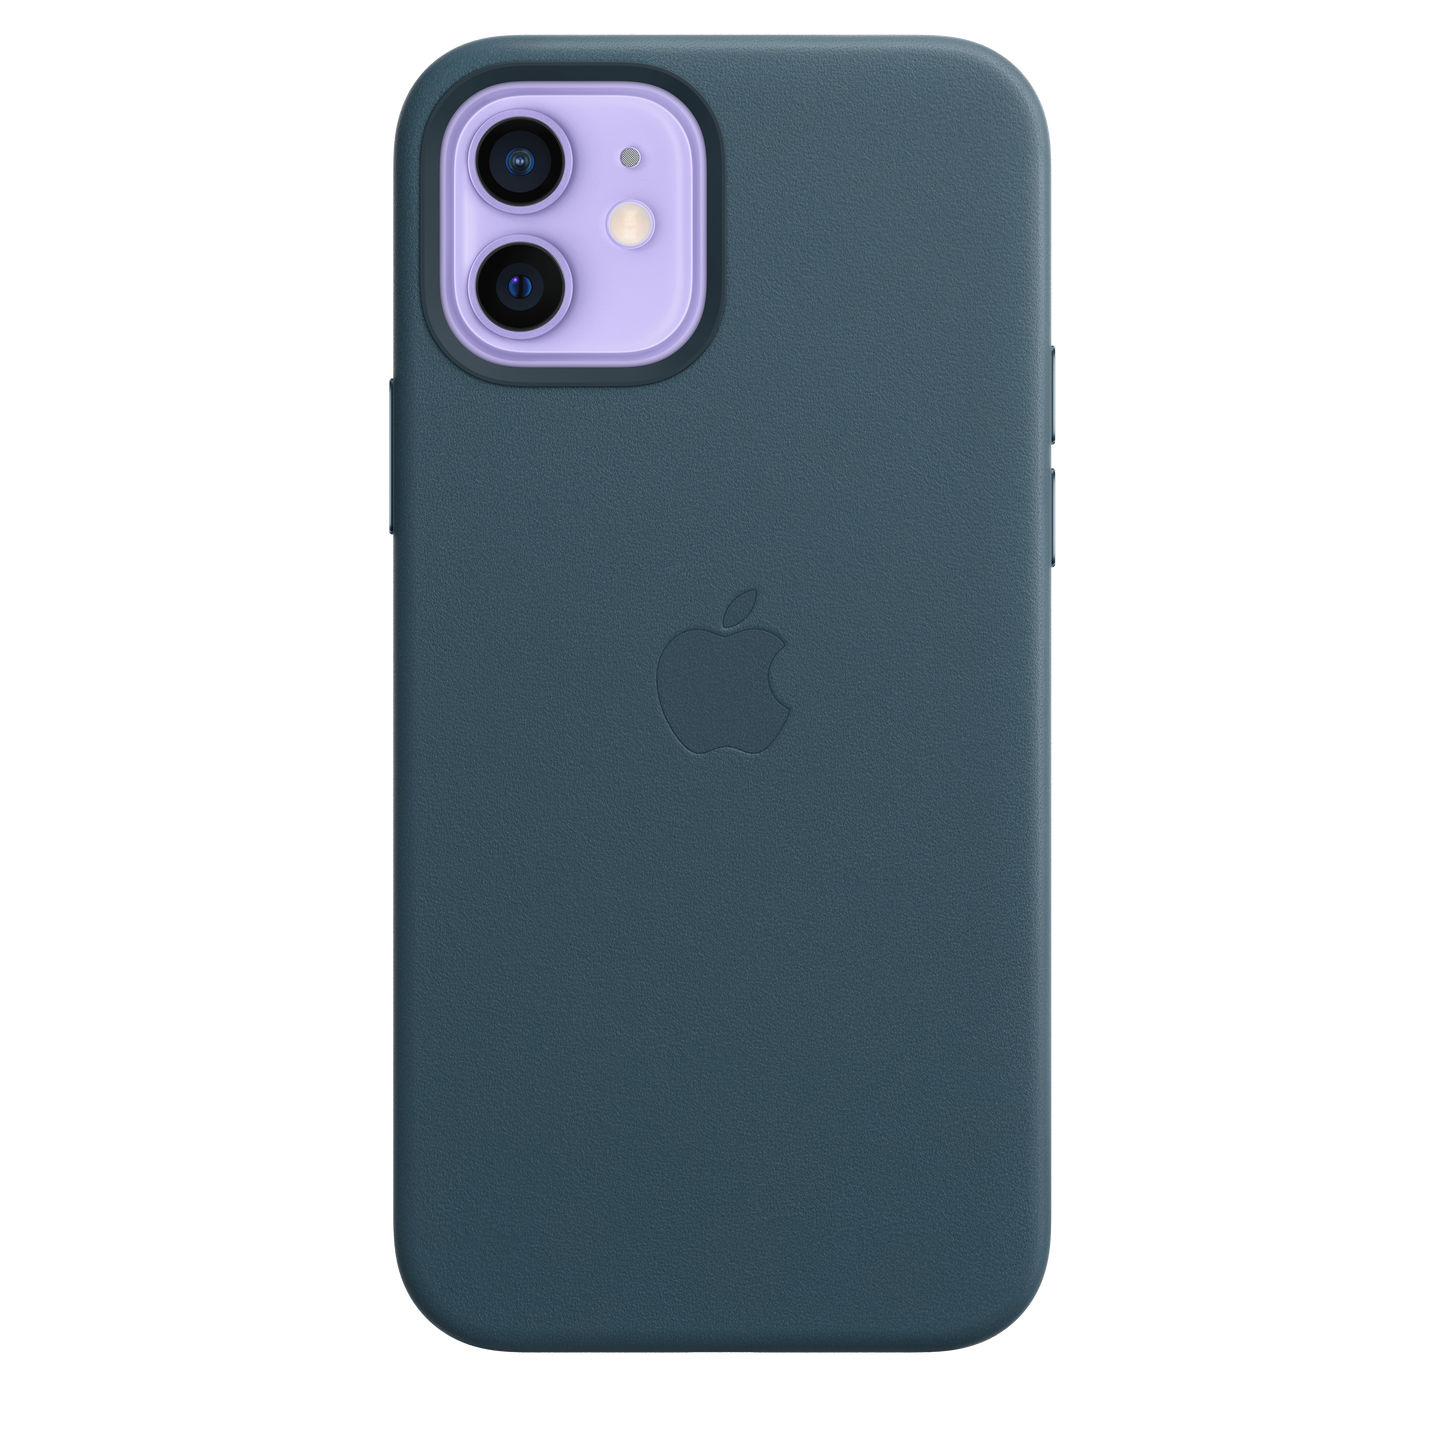 Funda de piel con MagSafe para el iPhone 12 y iPhone 12 Pro, Azul báltico - Rossellimac